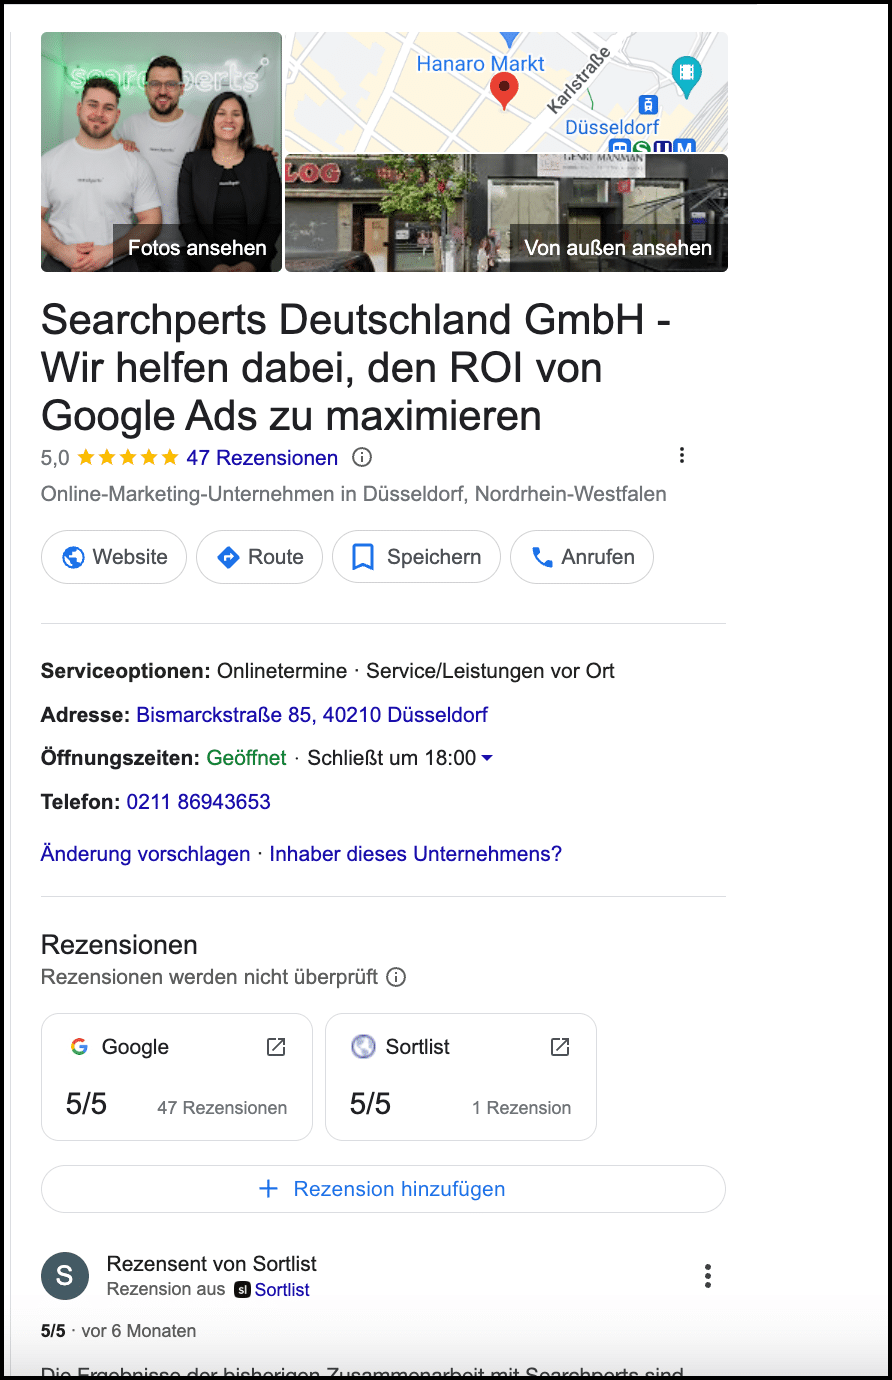 Screenshot des Google Business Profiles der Searchperts. Angezeigt werden die hohe Bewertung und die Firmenadresse in Düsseldorf sowie weitere Informationen.